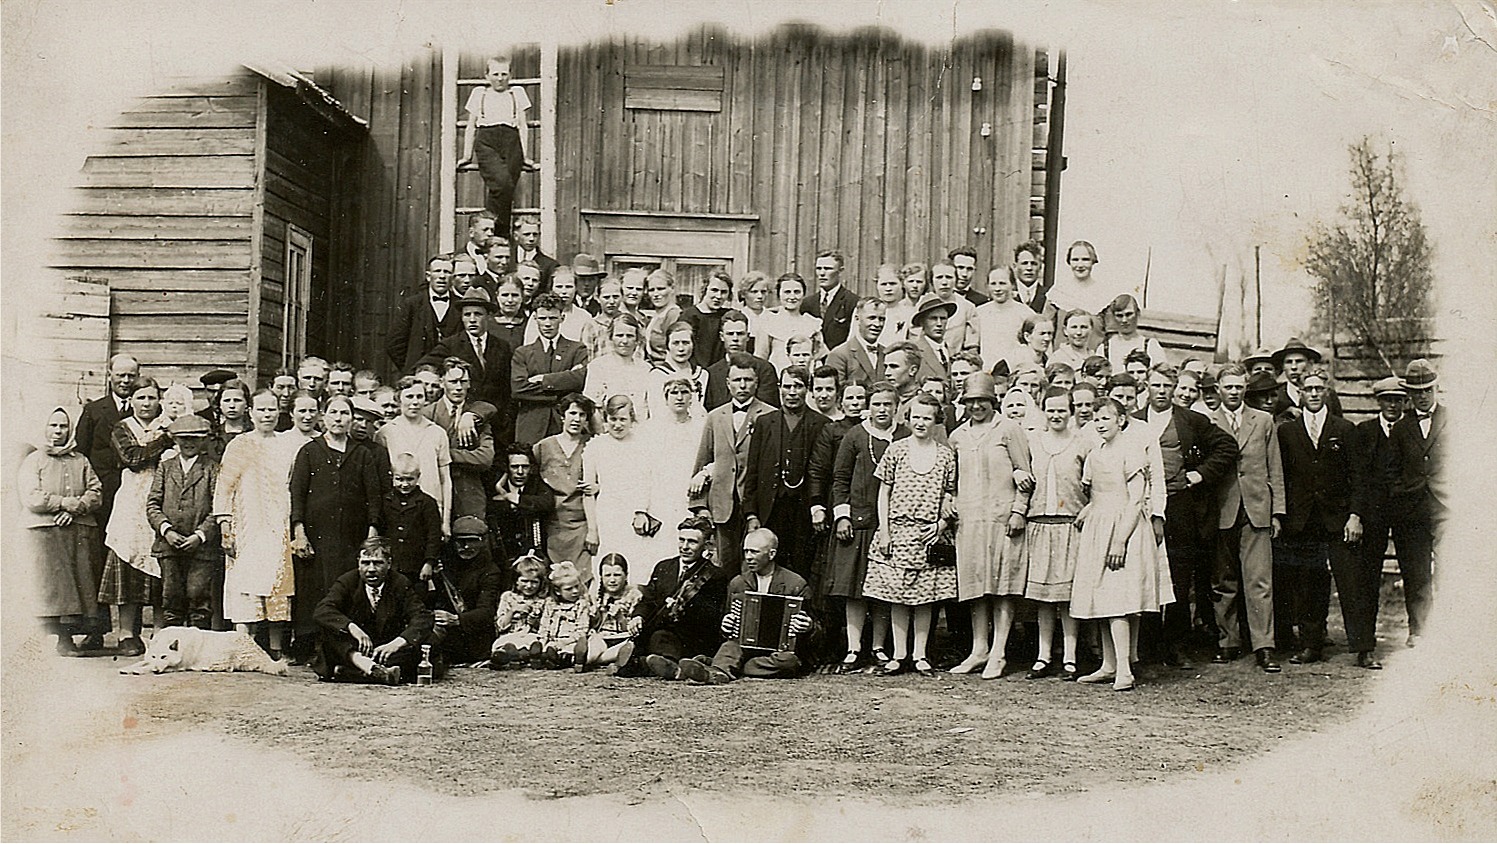 Det här fotot togs 1928 då Eero och Elna gifte i Kårk-Erk-Jåhanas gård i Palon. Kolla speciellt hur bra fotografen har lyckats fånga alla bröllopsgästerna på bild, till och med hunden nere till vänster har slagit sig till ro i väntan på fotografens knäpp.